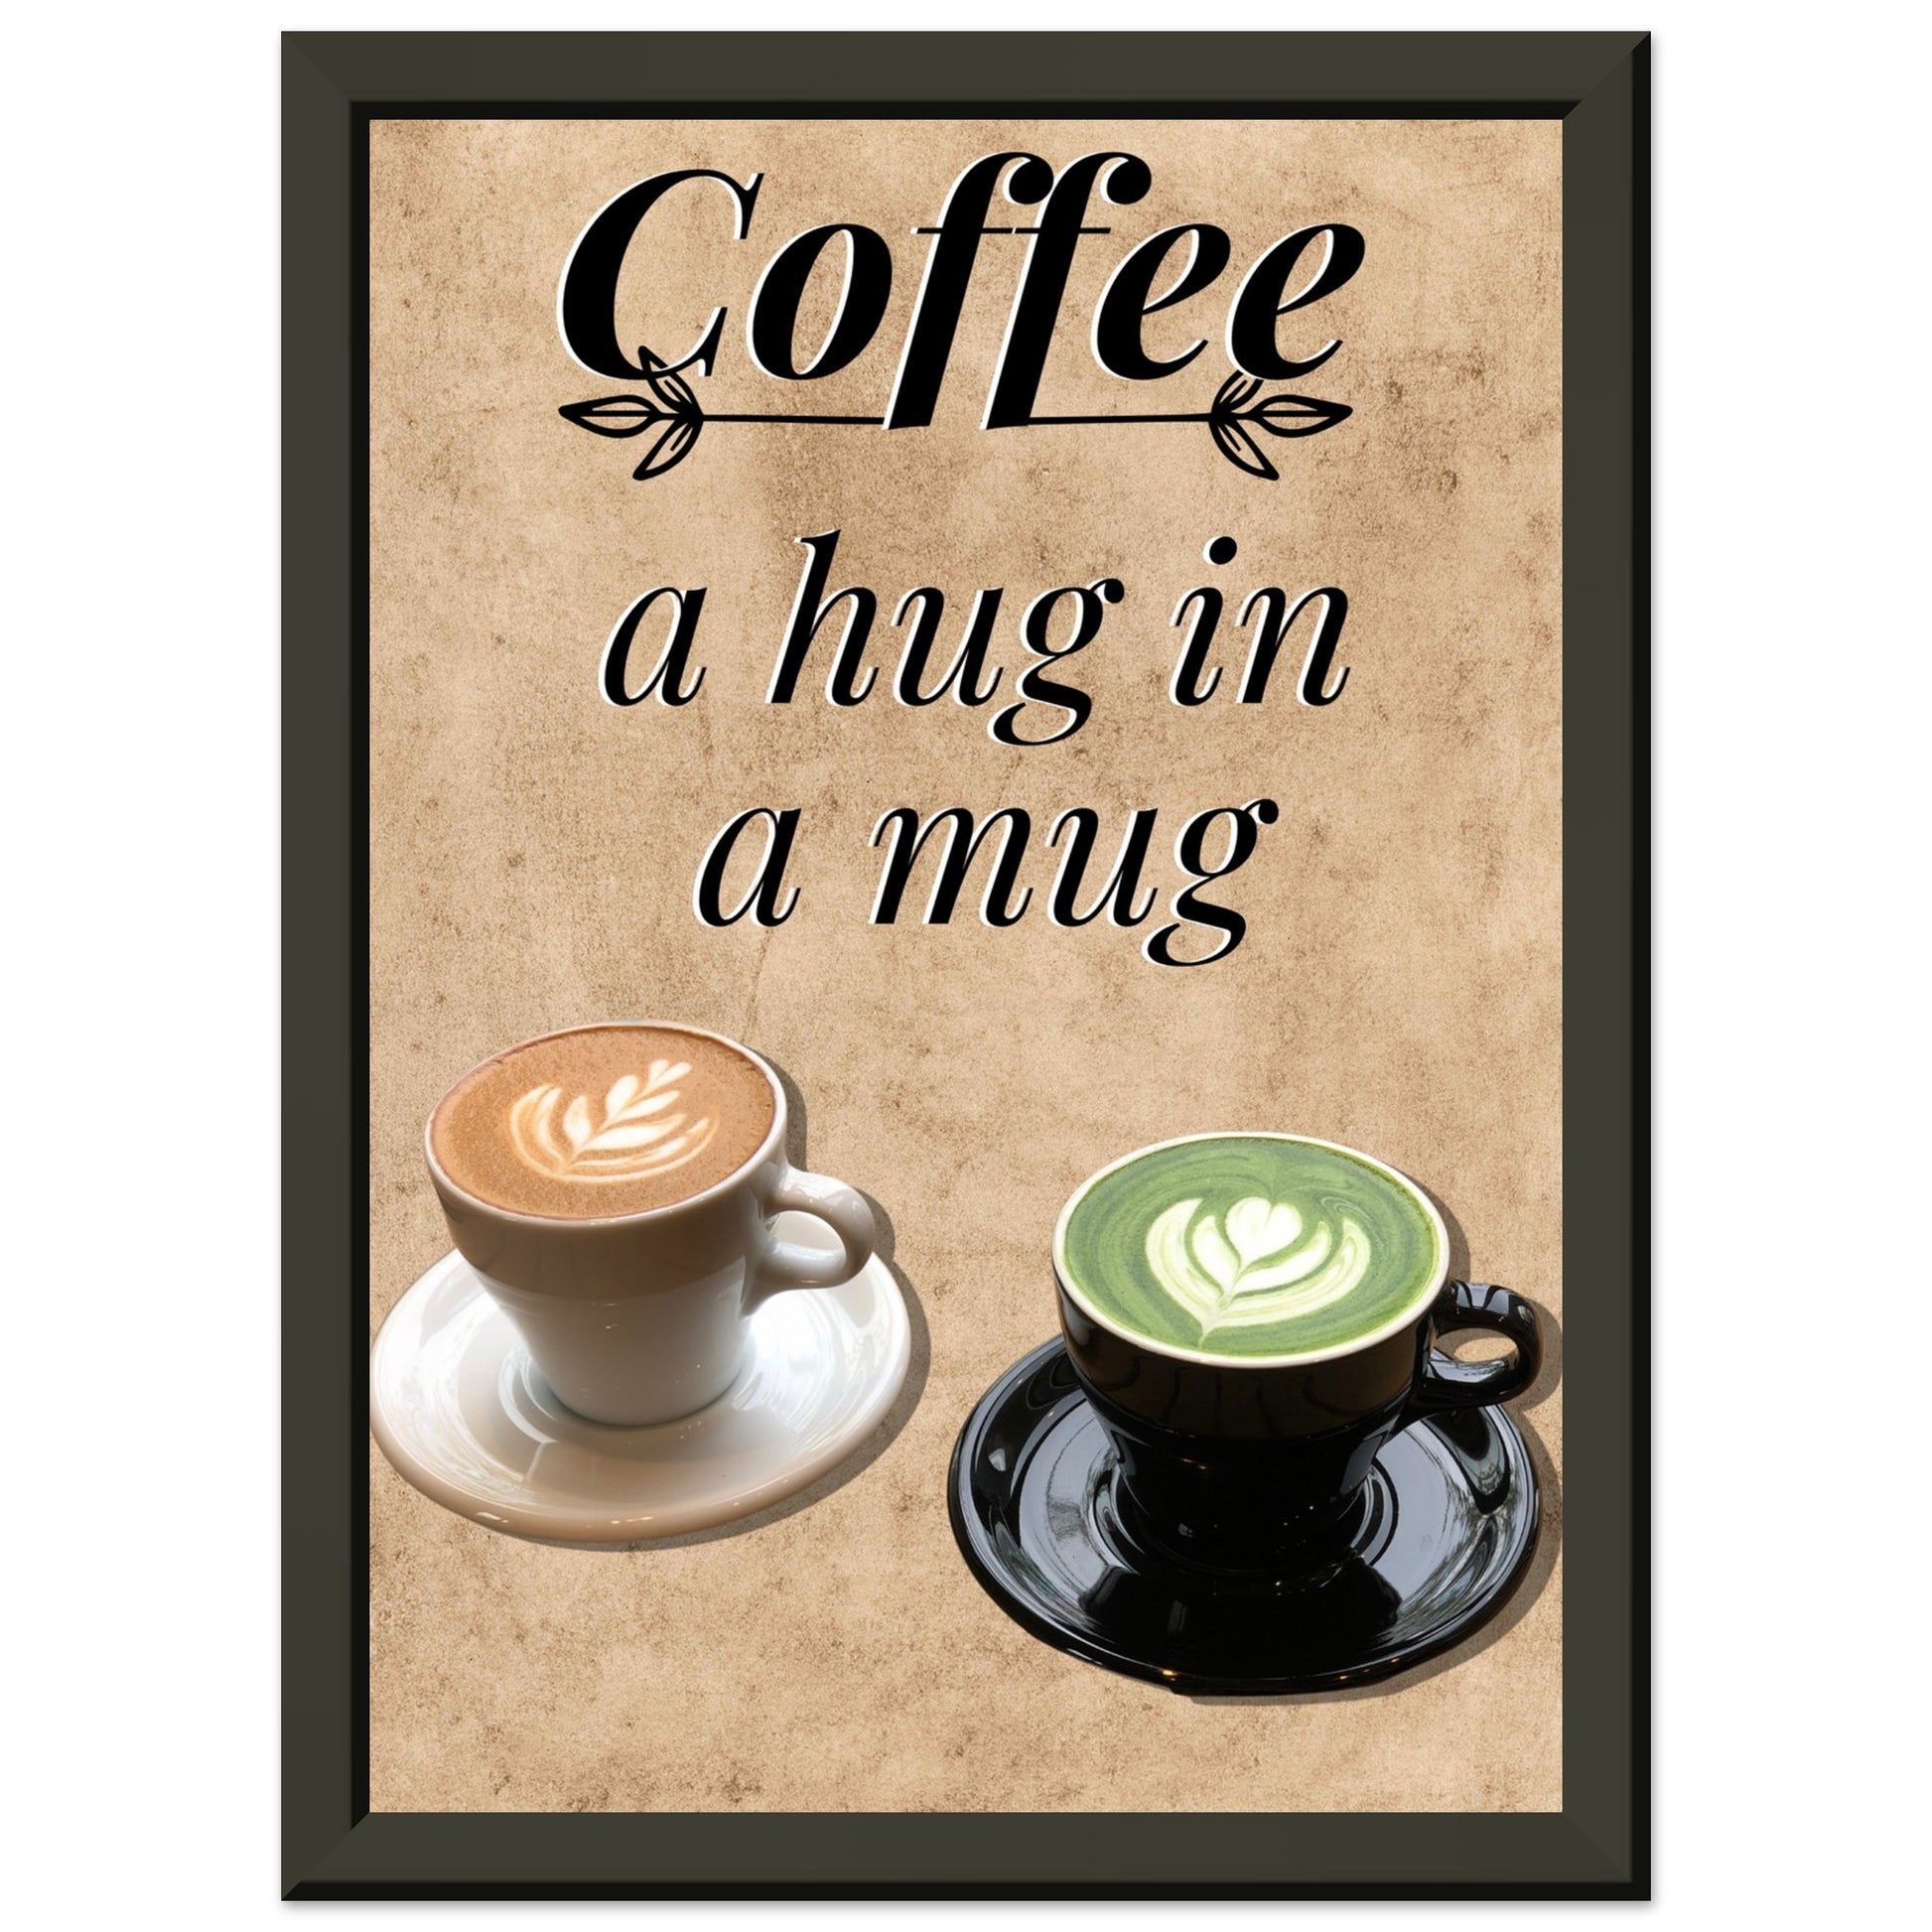 Eingerahmtes Bild mit der Überschrift: "Coffee" und dem Titel: "a hug in a mug" mit zwei Tassen Kaffee auf einem Beigen Hintergrund